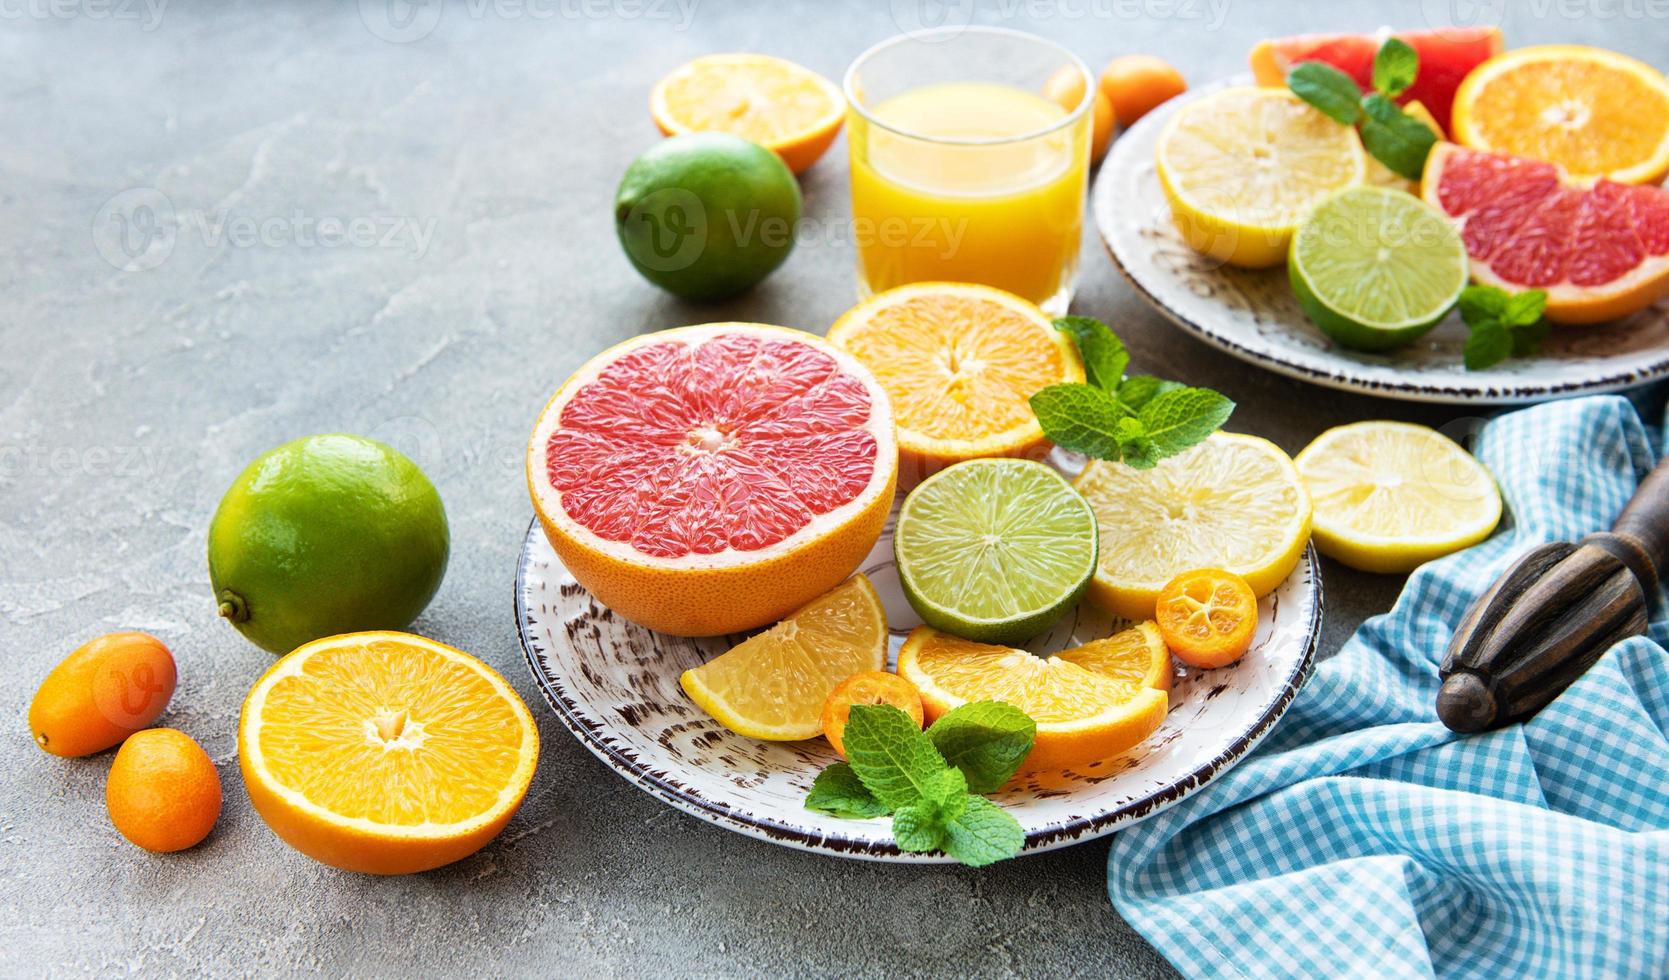 färska citrusfrukter foto